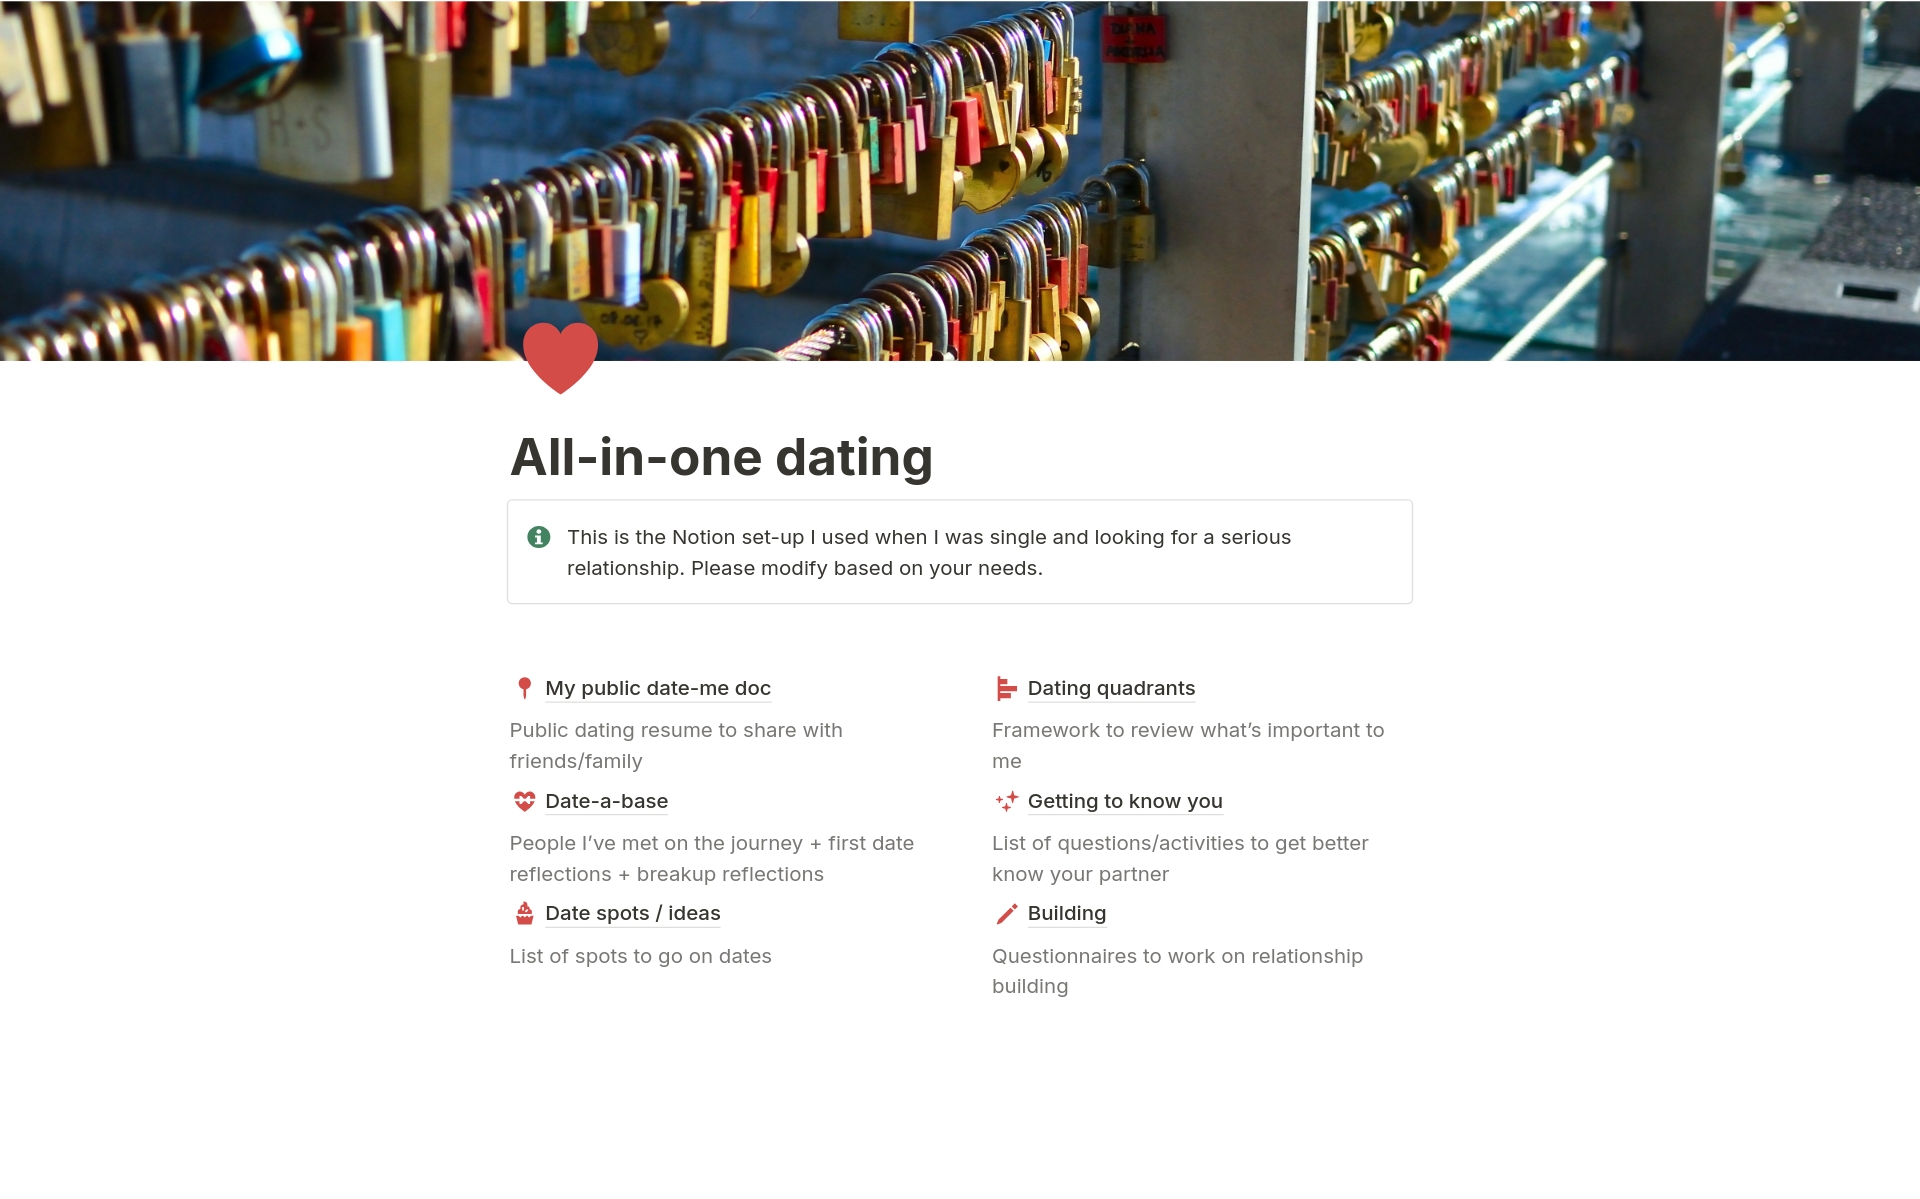 Vista previa de una plantilla para All-in-one dating